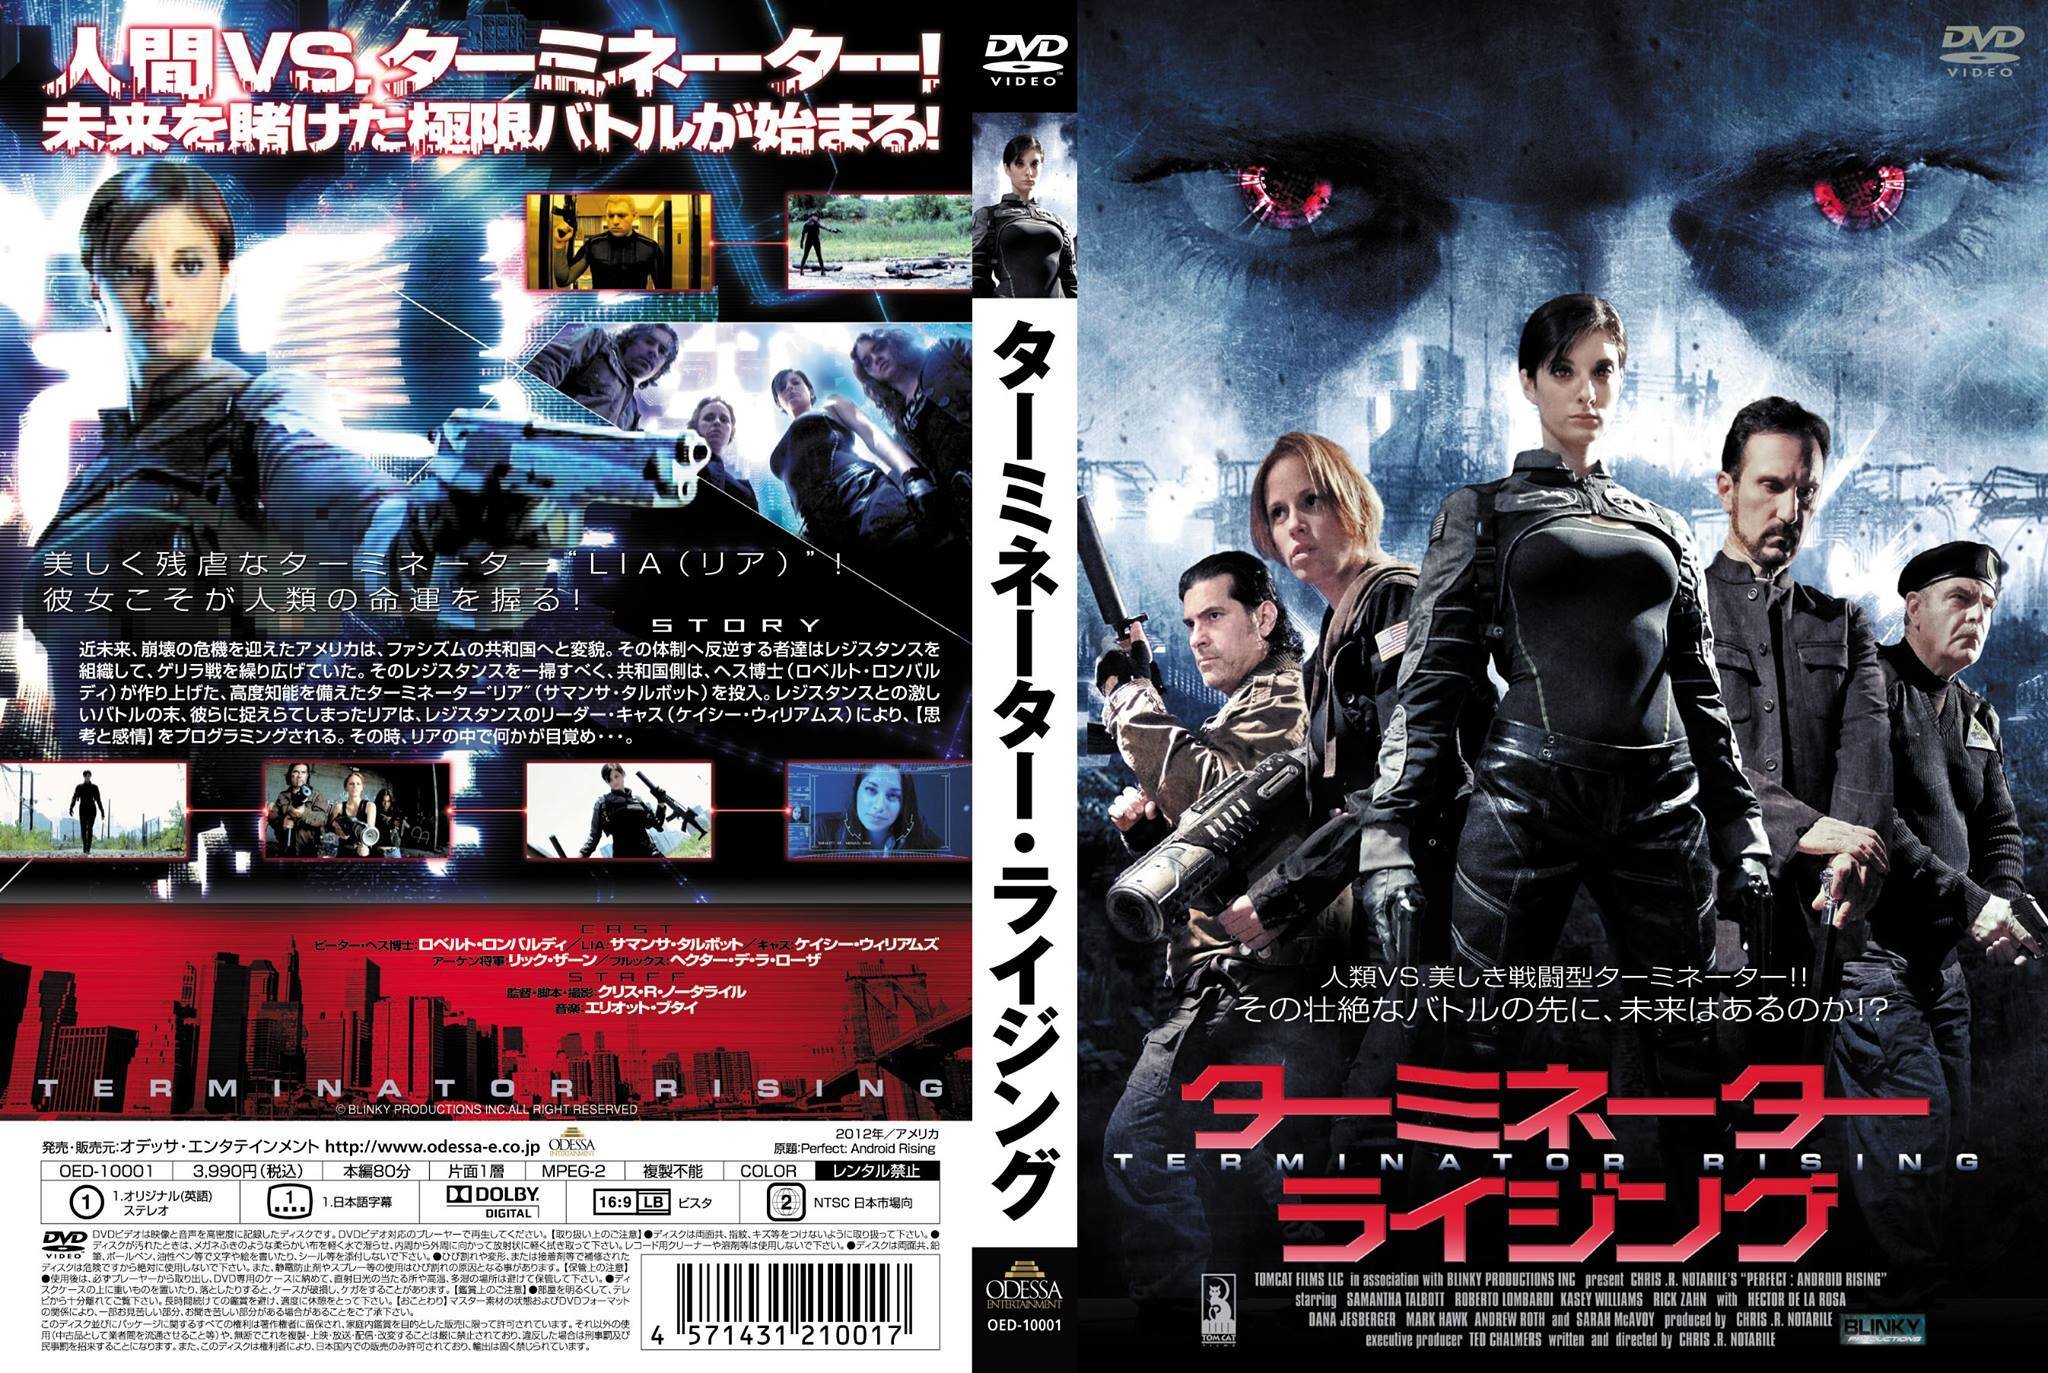 2013 Japanese DVD Art titled 